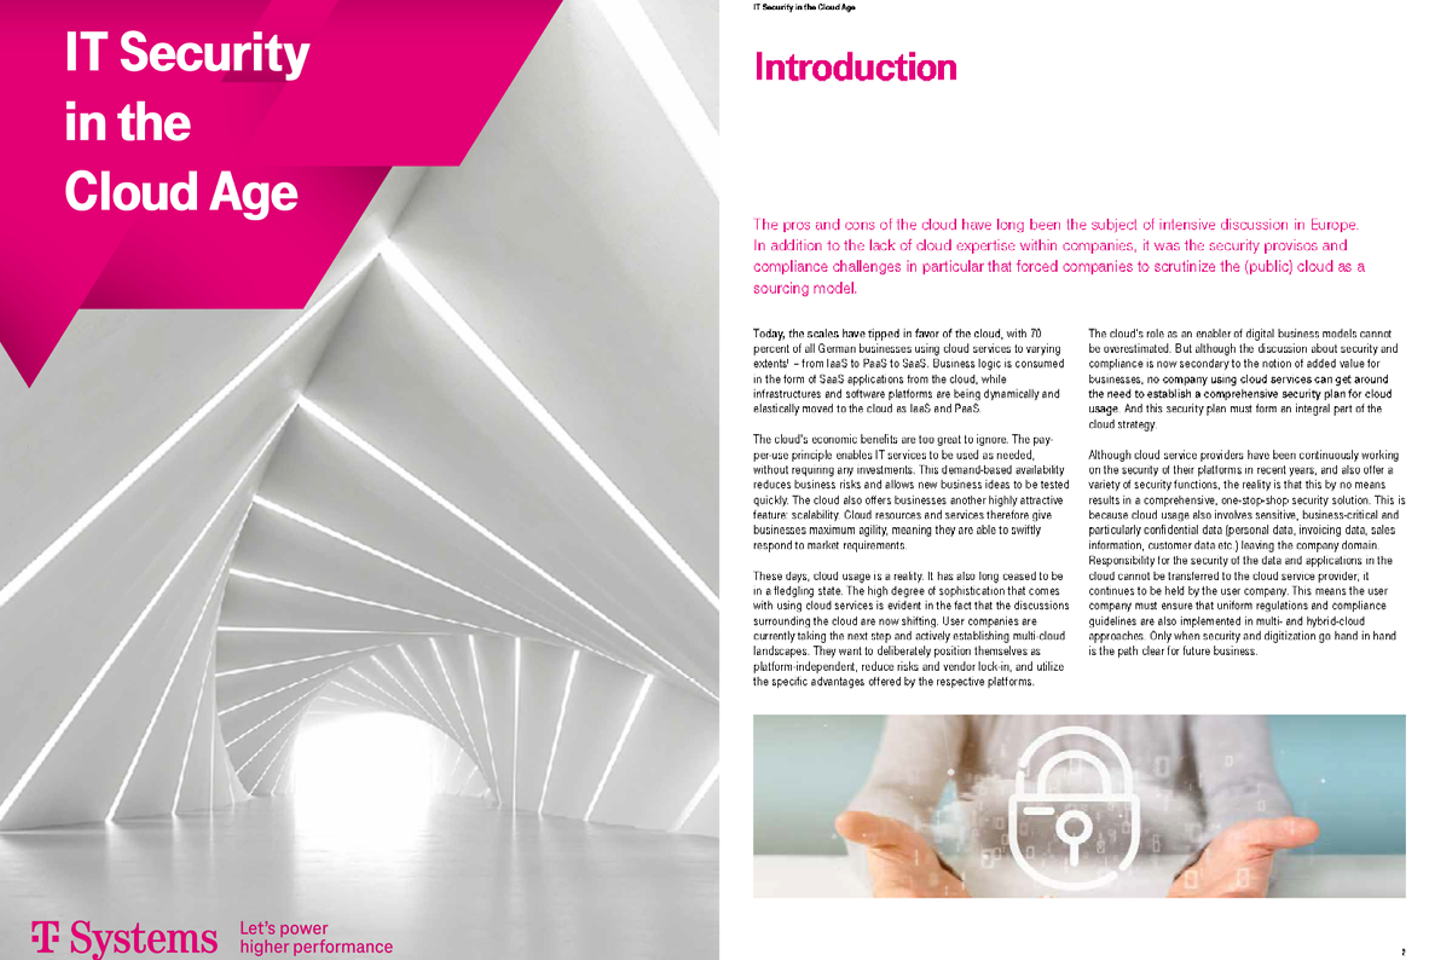 Captura de la portada y las tres páginas siguientes del whitepaper: Seguridad tecnológica en la era cloud